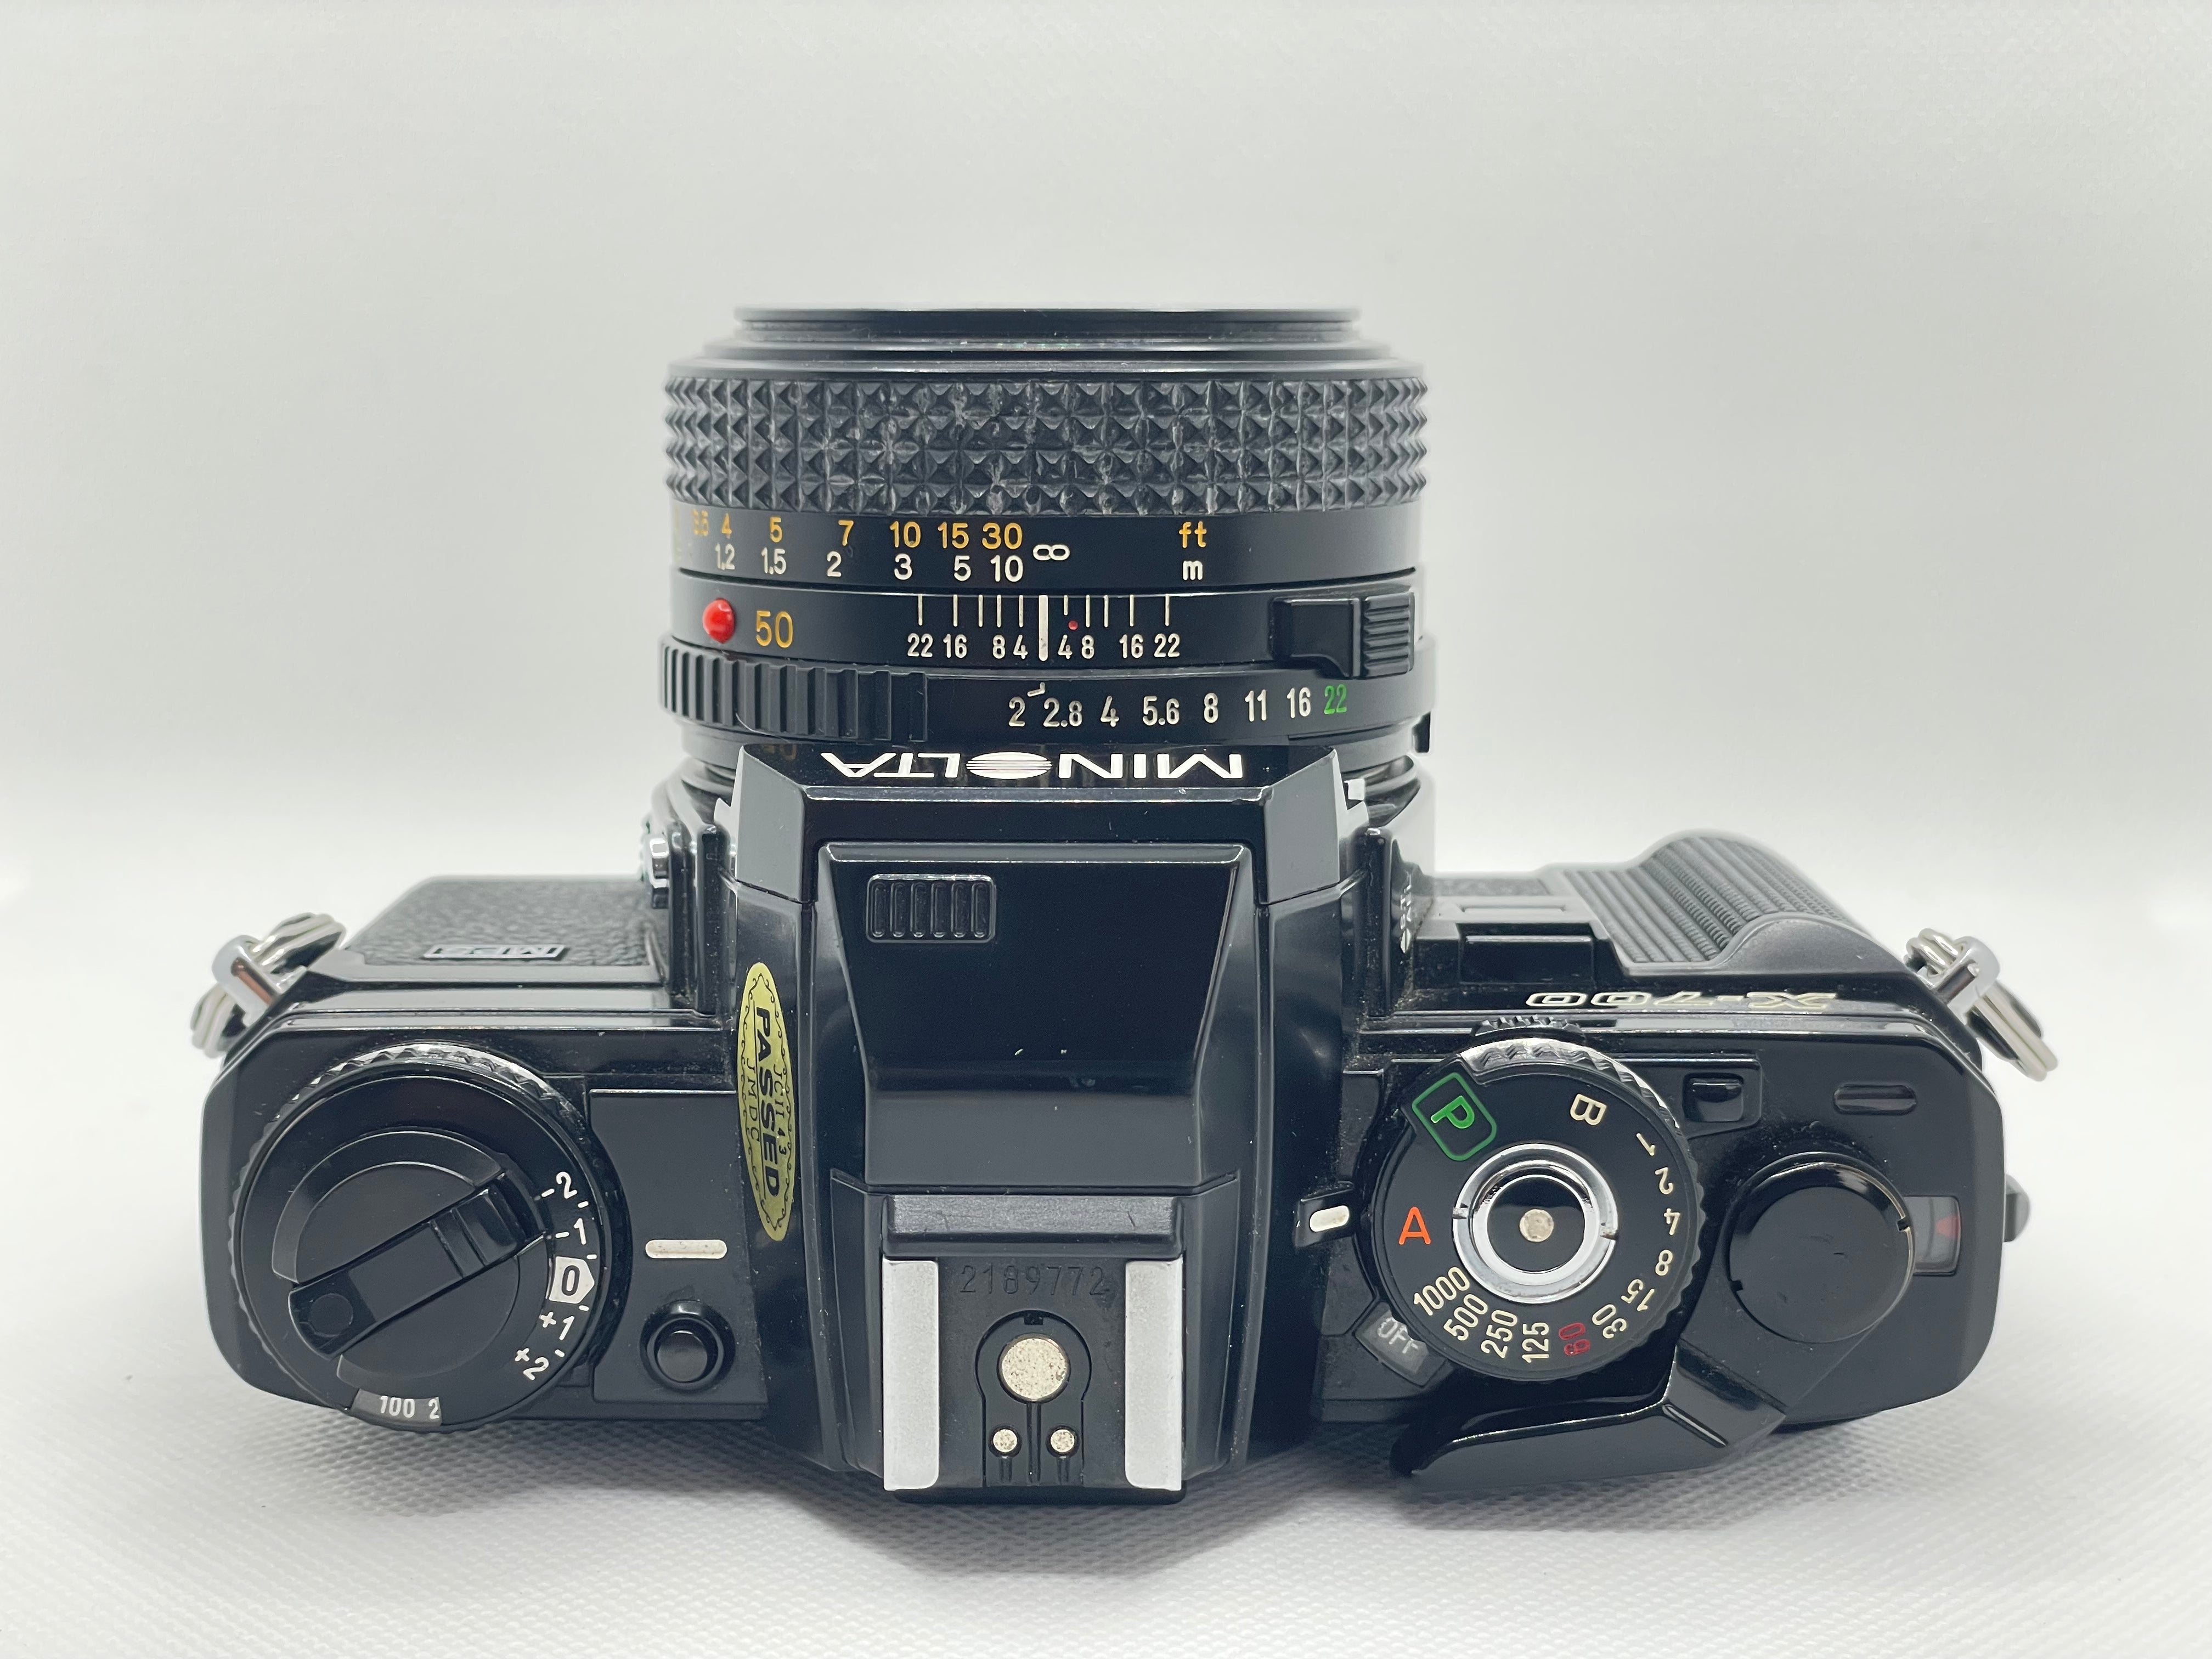 Minolta X-700 50mm 2